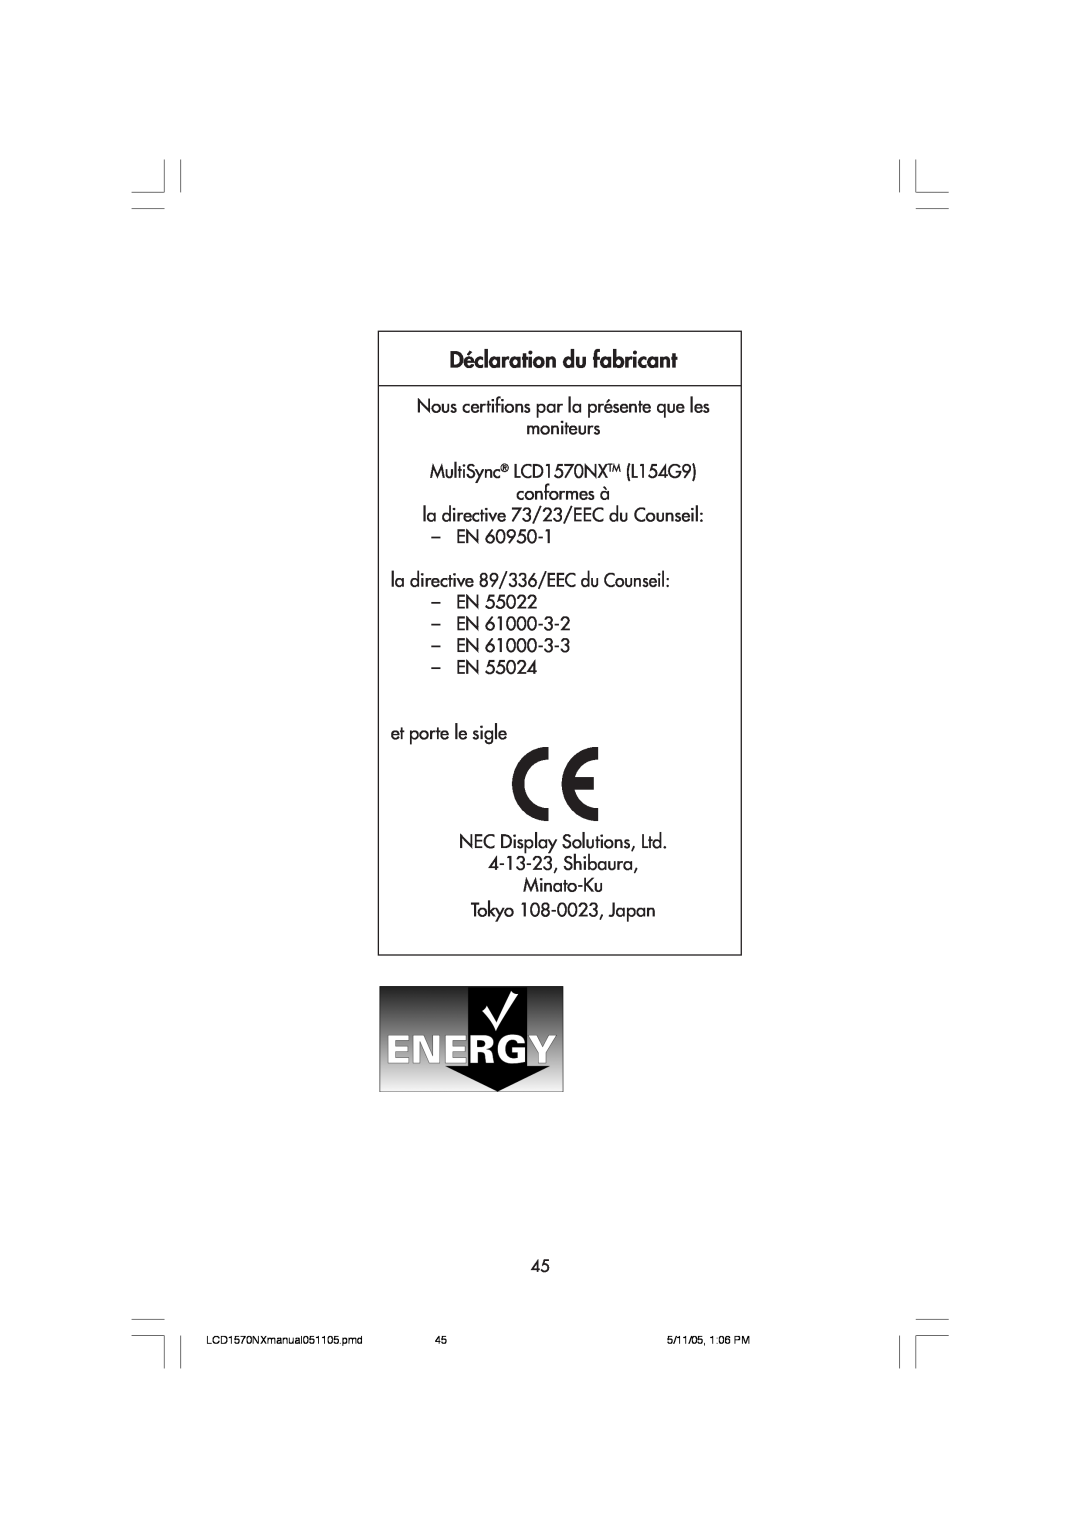 NEC user manual Déclaration du fabricant, Nous certifions par la présente que les moniteurs, LCD1570NXmanual051105.pmd 